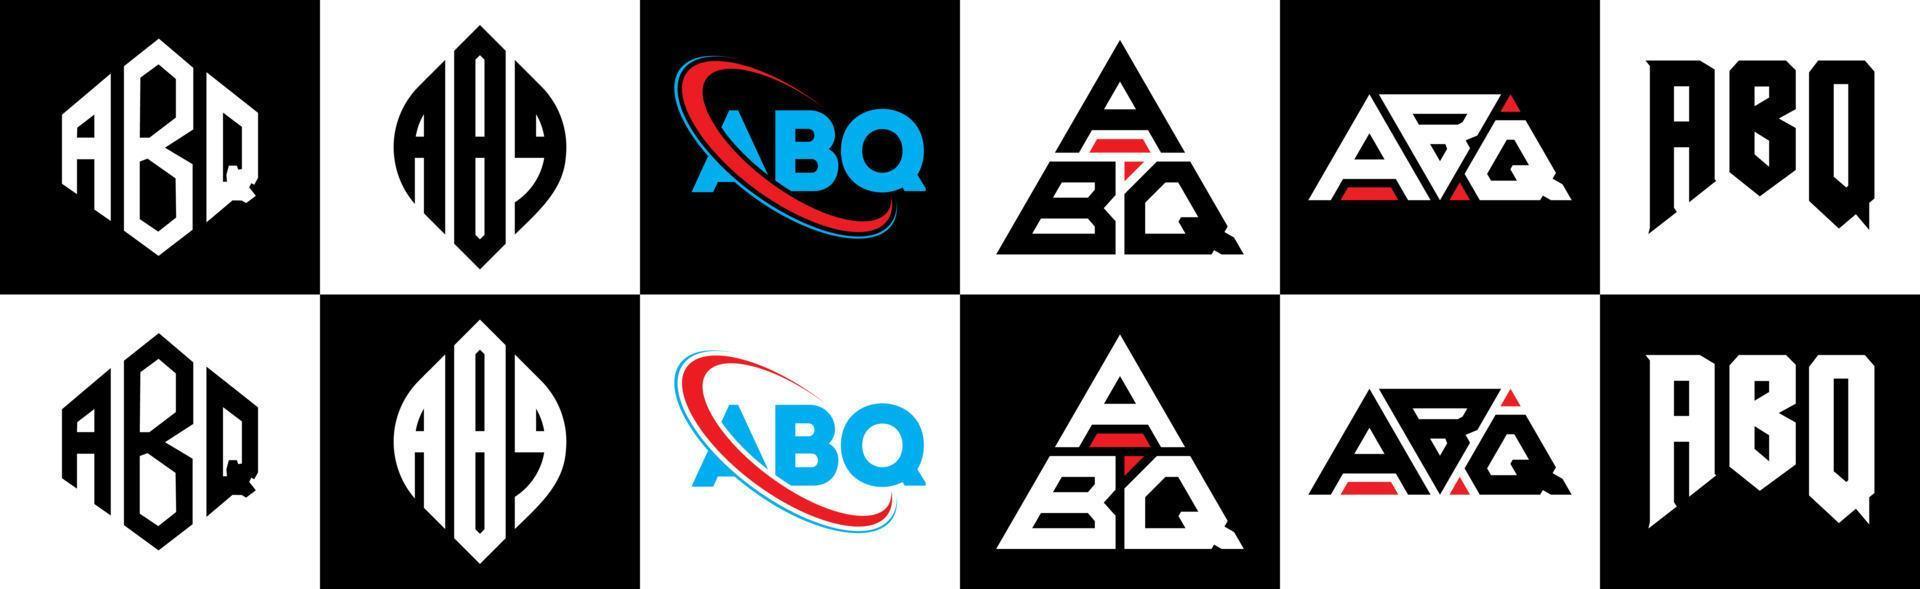 création de logo de lettre abq en six styles. polygone abq, cercle, triangle, hexagone, style plat et simple avec logo de lettre de variation de couleur noir et blanc dans un plan de travail. abq logo minimaliste et classique vecteur